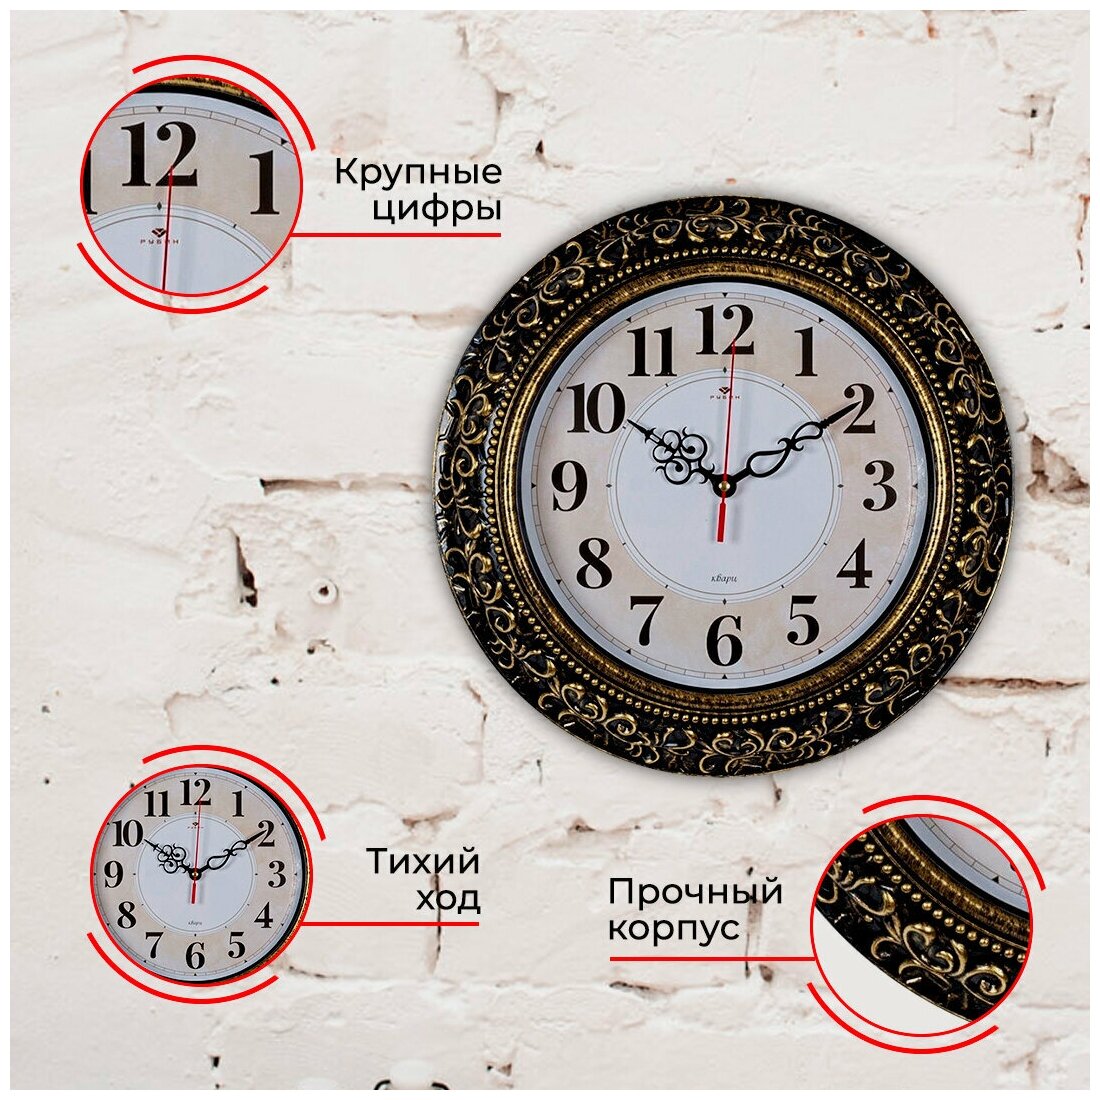 Стильные кварцевые часы в круглом корпусе Рубин Классика 3524-007 35 см с большими арабскими цифрами для украшения интерьера гостиной, спальни, кухни или офиса